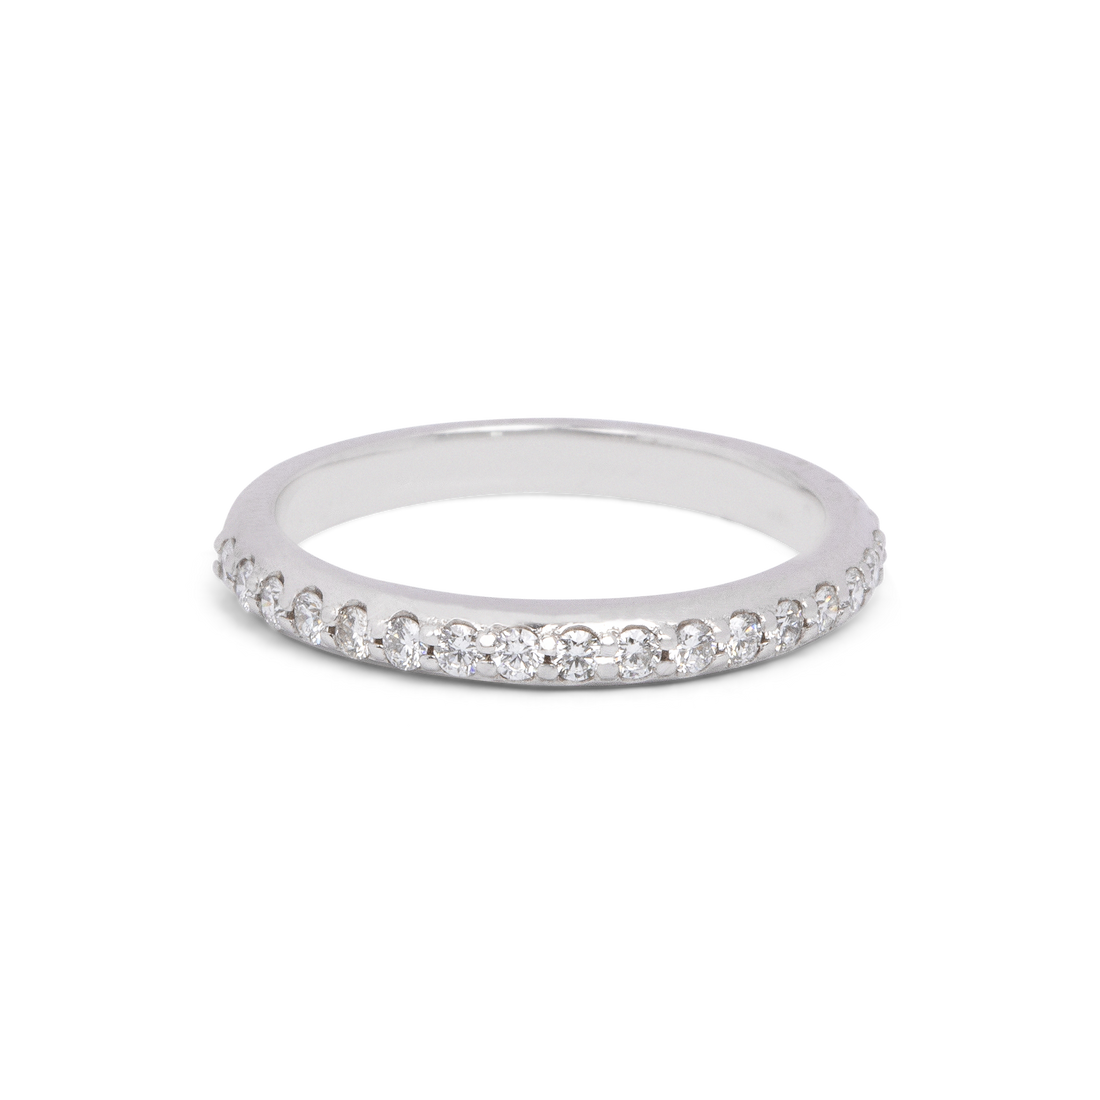 Diamond Band Ring | 0.38 CT | 10k-14k Yellow/White/Rose Gold